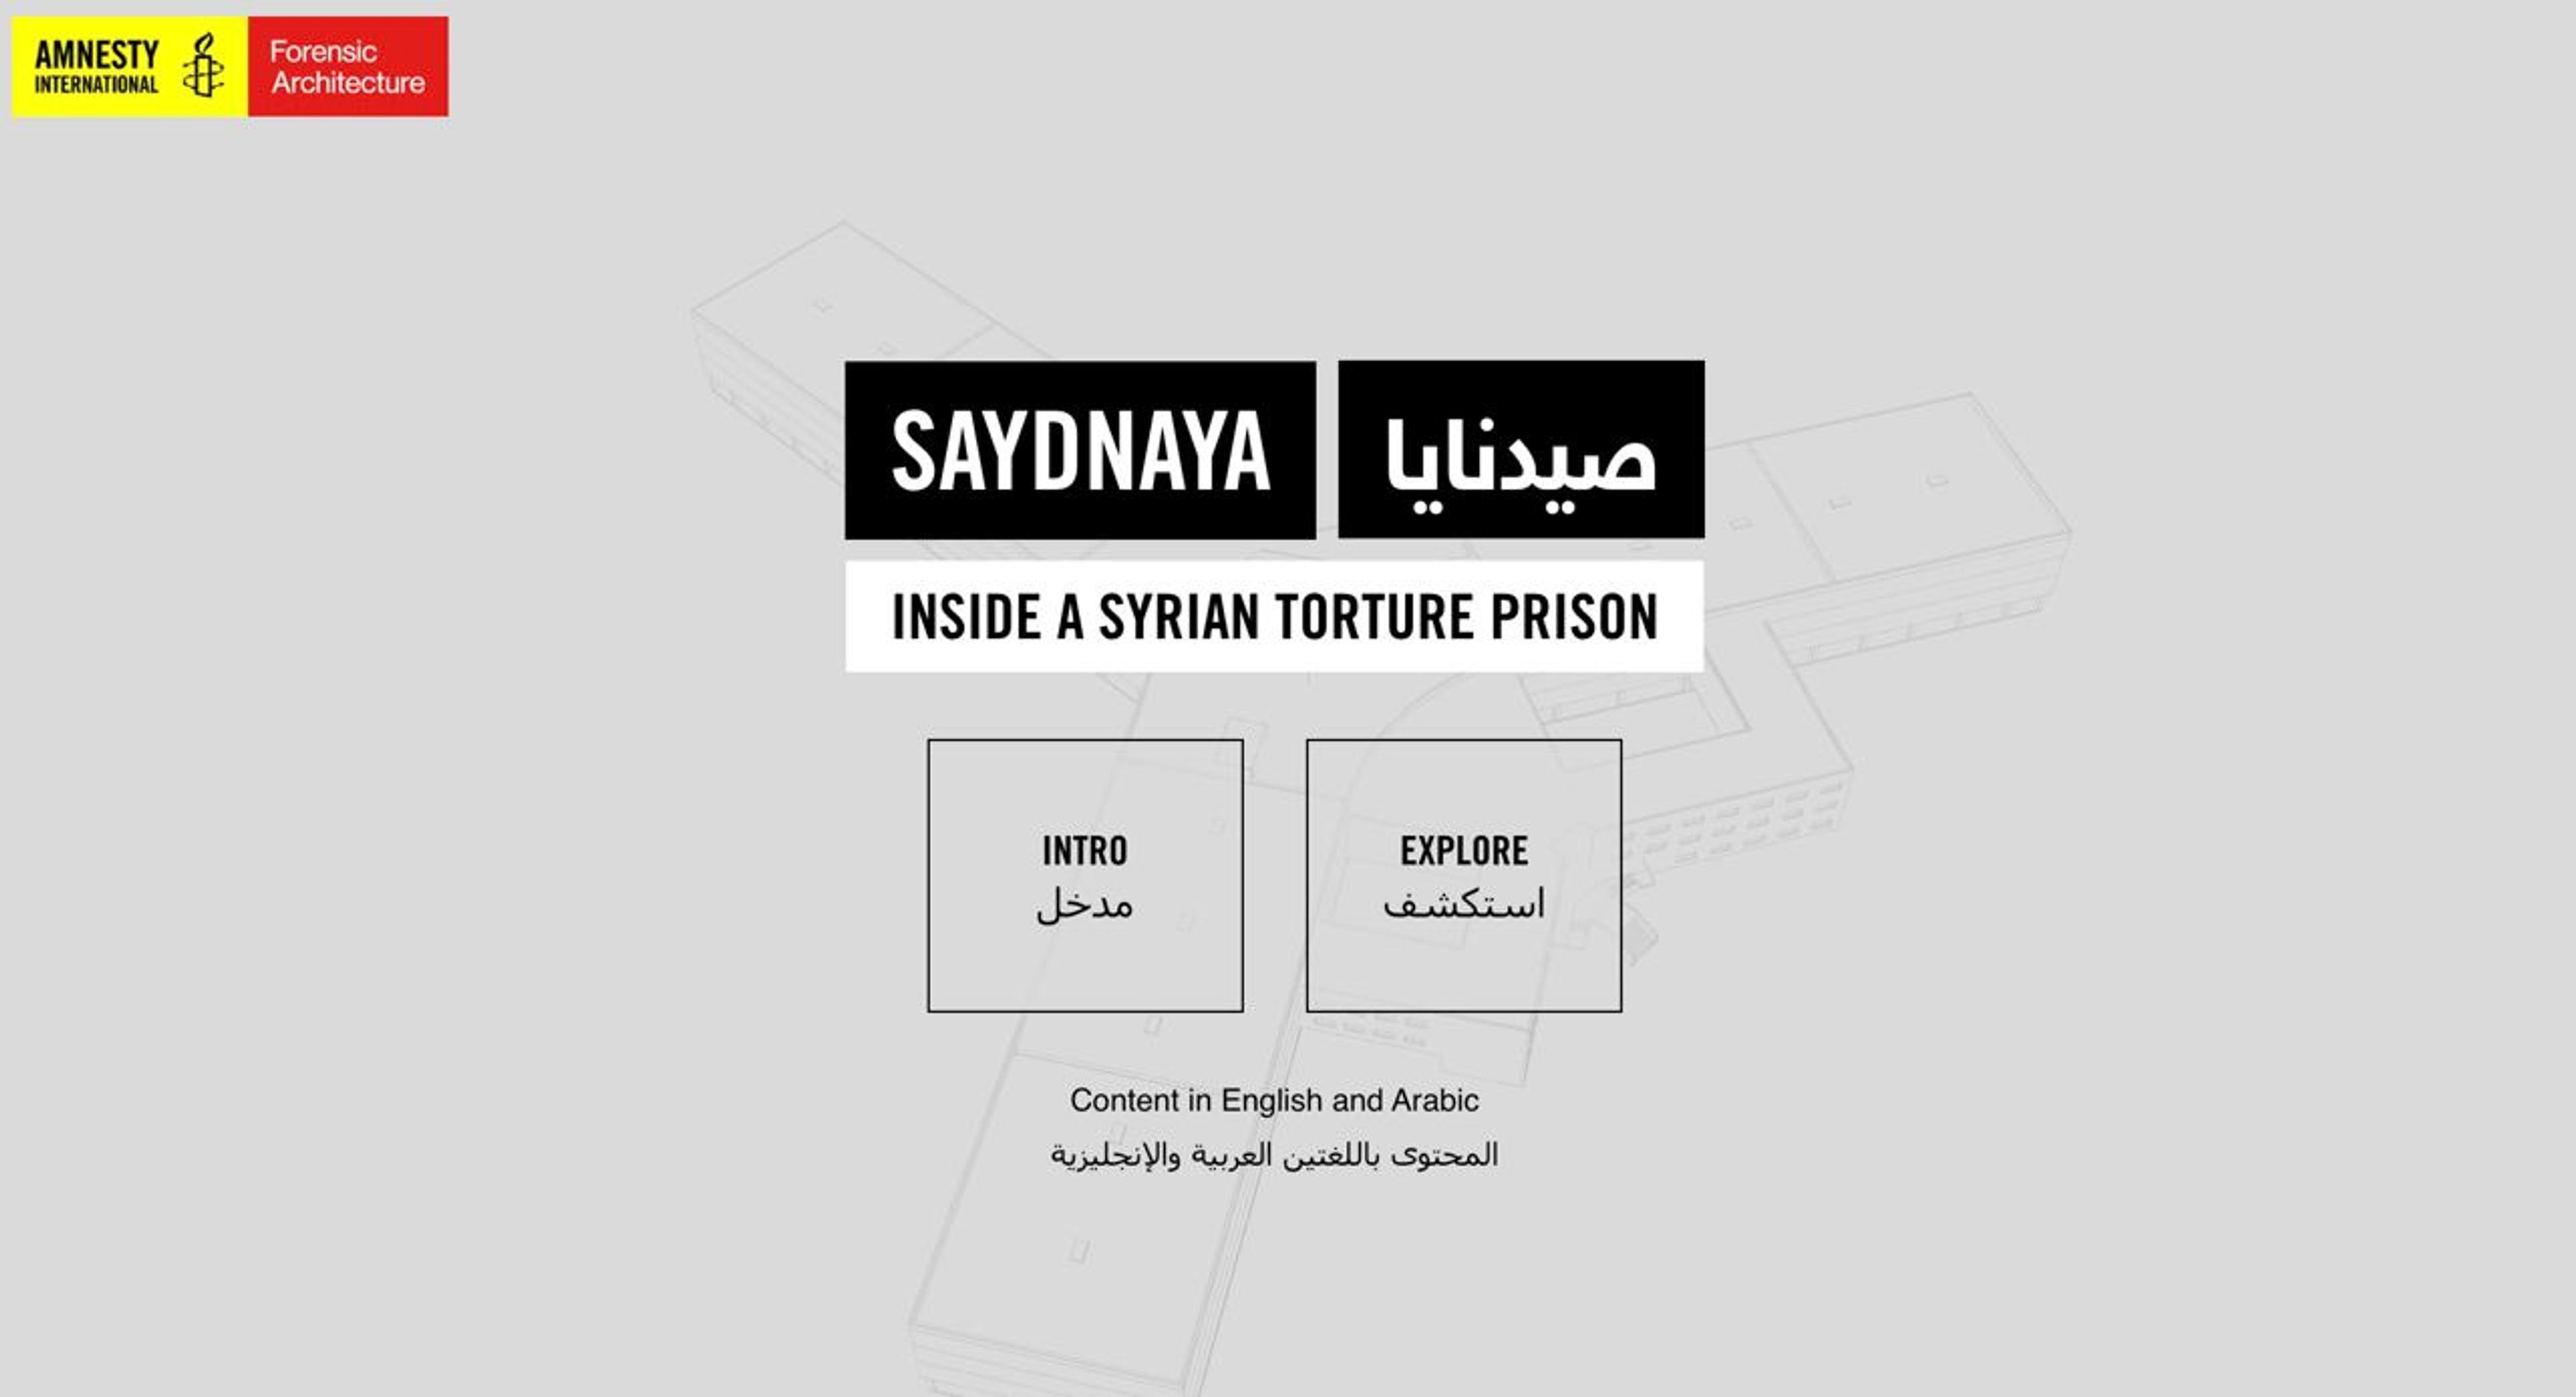 Amnesty International: Explore Sadnaya